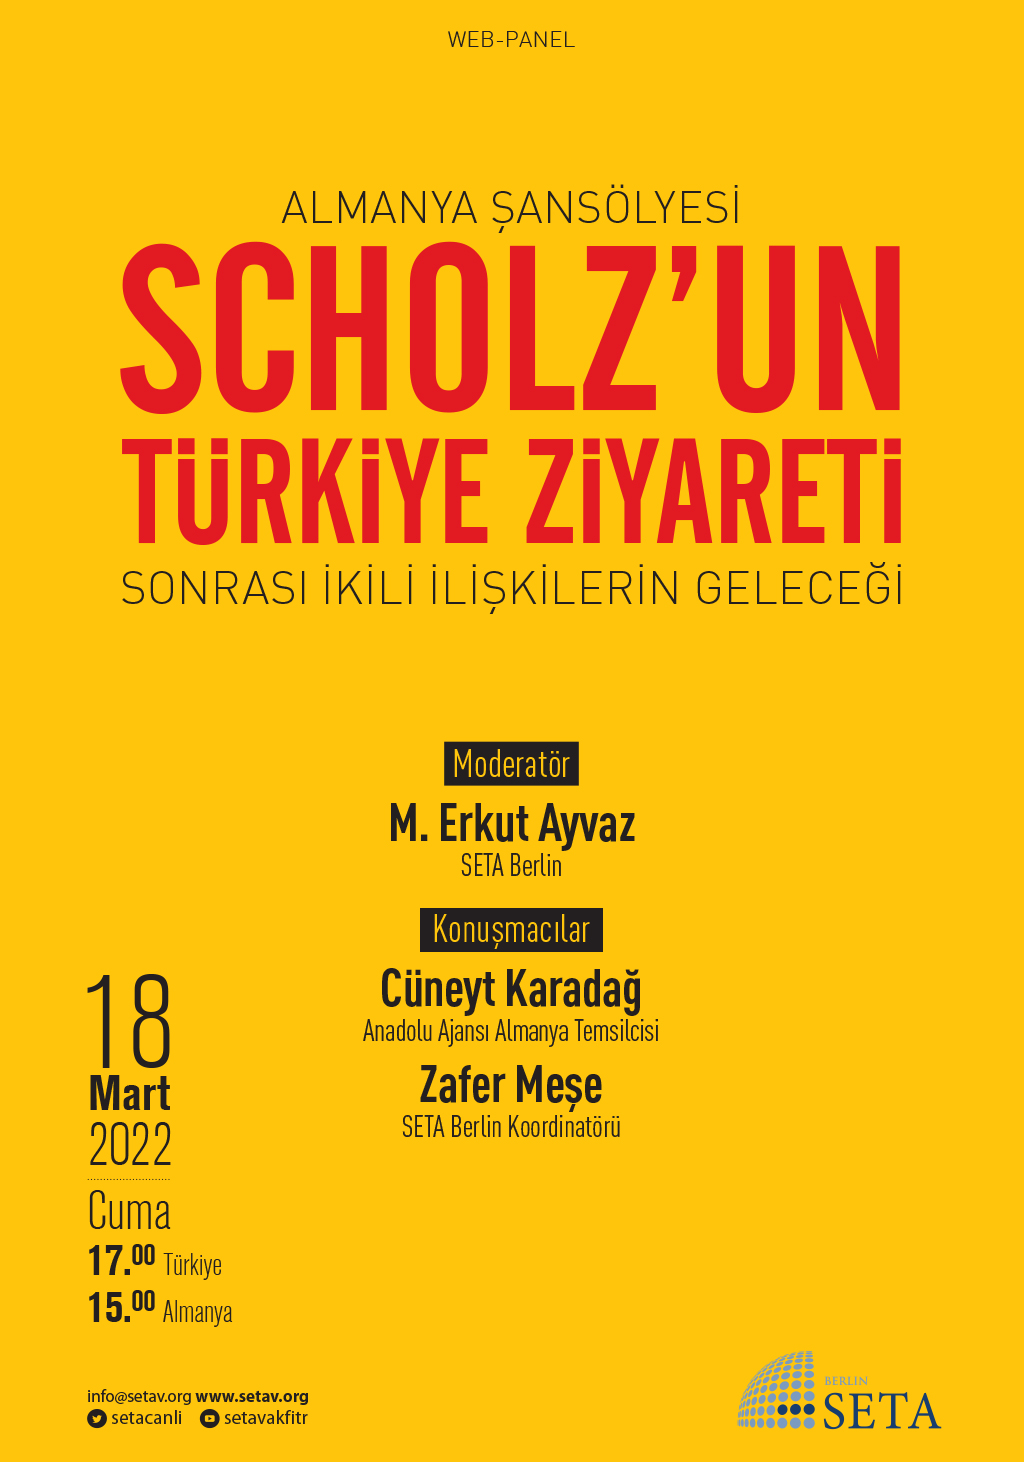 Web Panel: Almanya Şansölyesi Scholz’un Türkiye Ziyareti Sonrası İkili İlişkilerin Geleceği